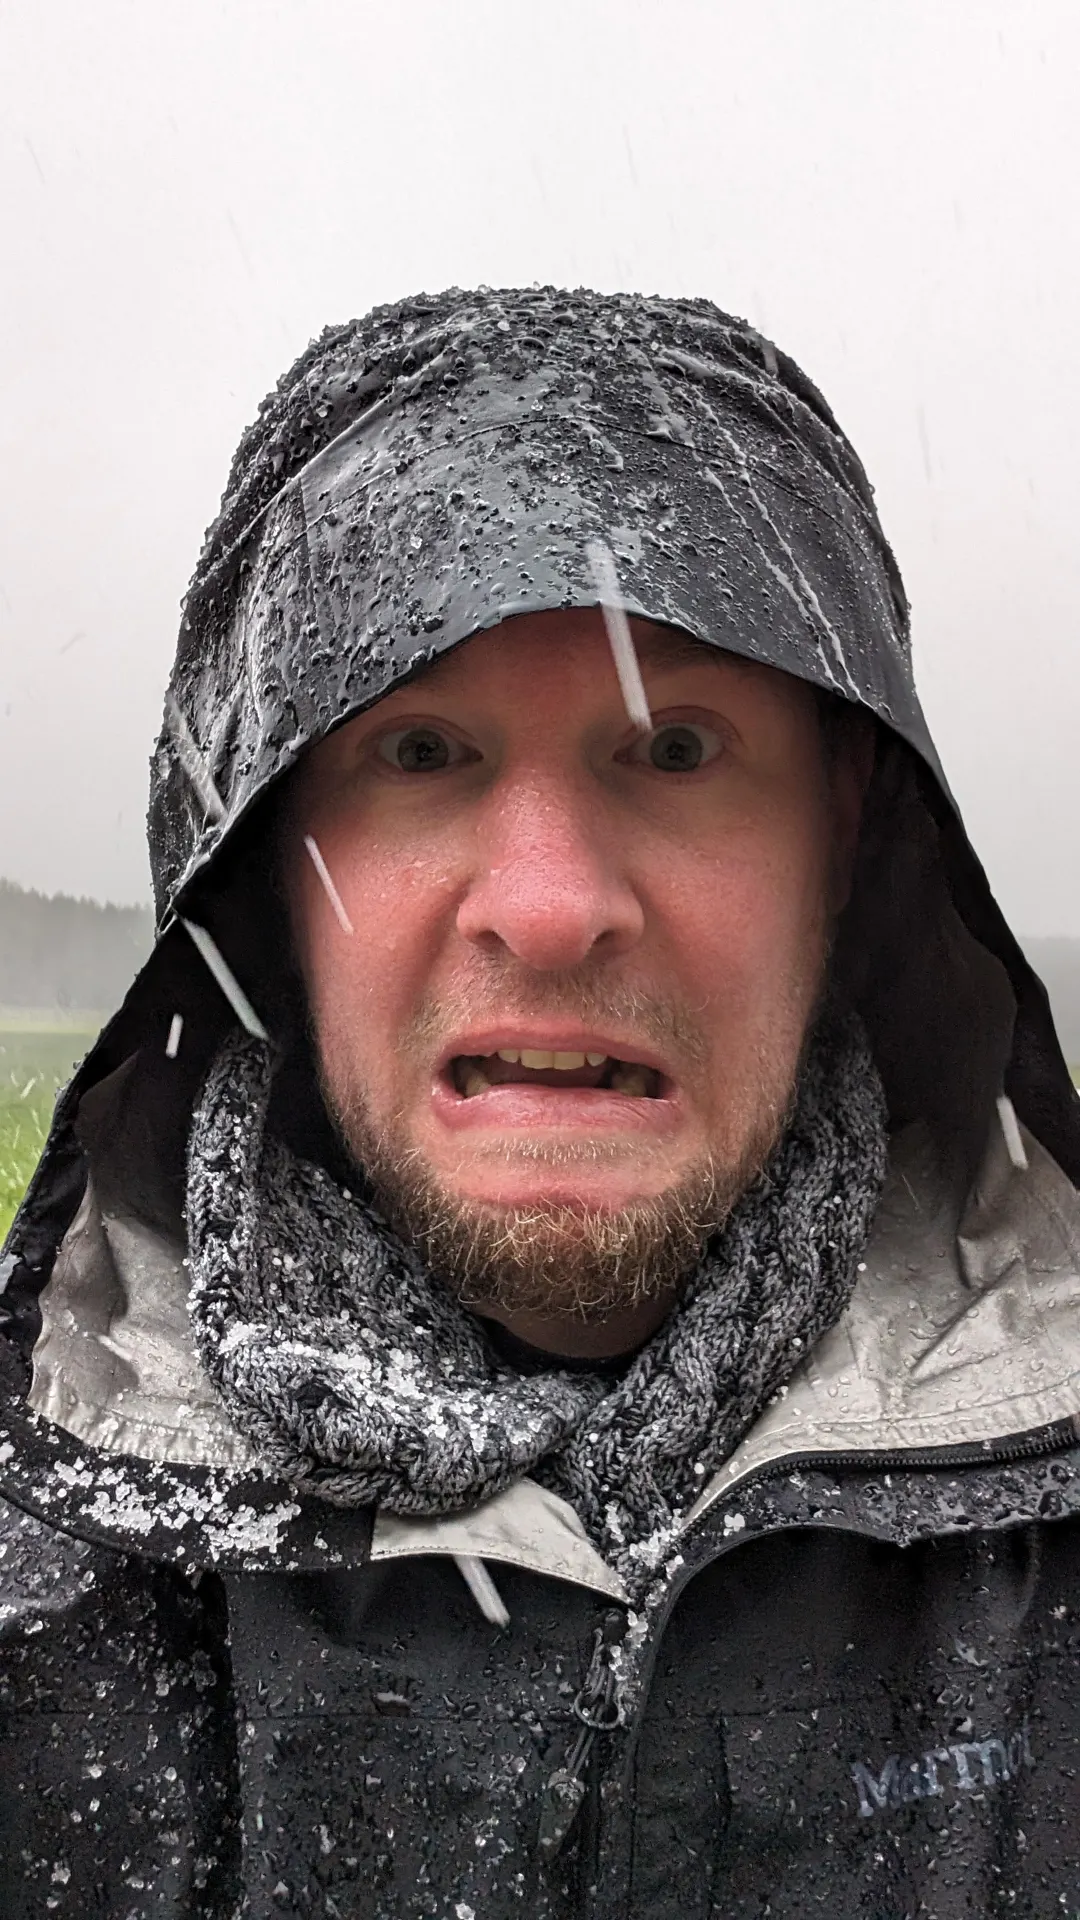 Das Foto zeigt André, Gesichtsausdruck gequält/erschrocken, gehüllt in eine Kapuze, Regen- und Graupeltropfen huschen durchs Bild. Ist das Schnee auf seiner Jacke? Der arme Mann!